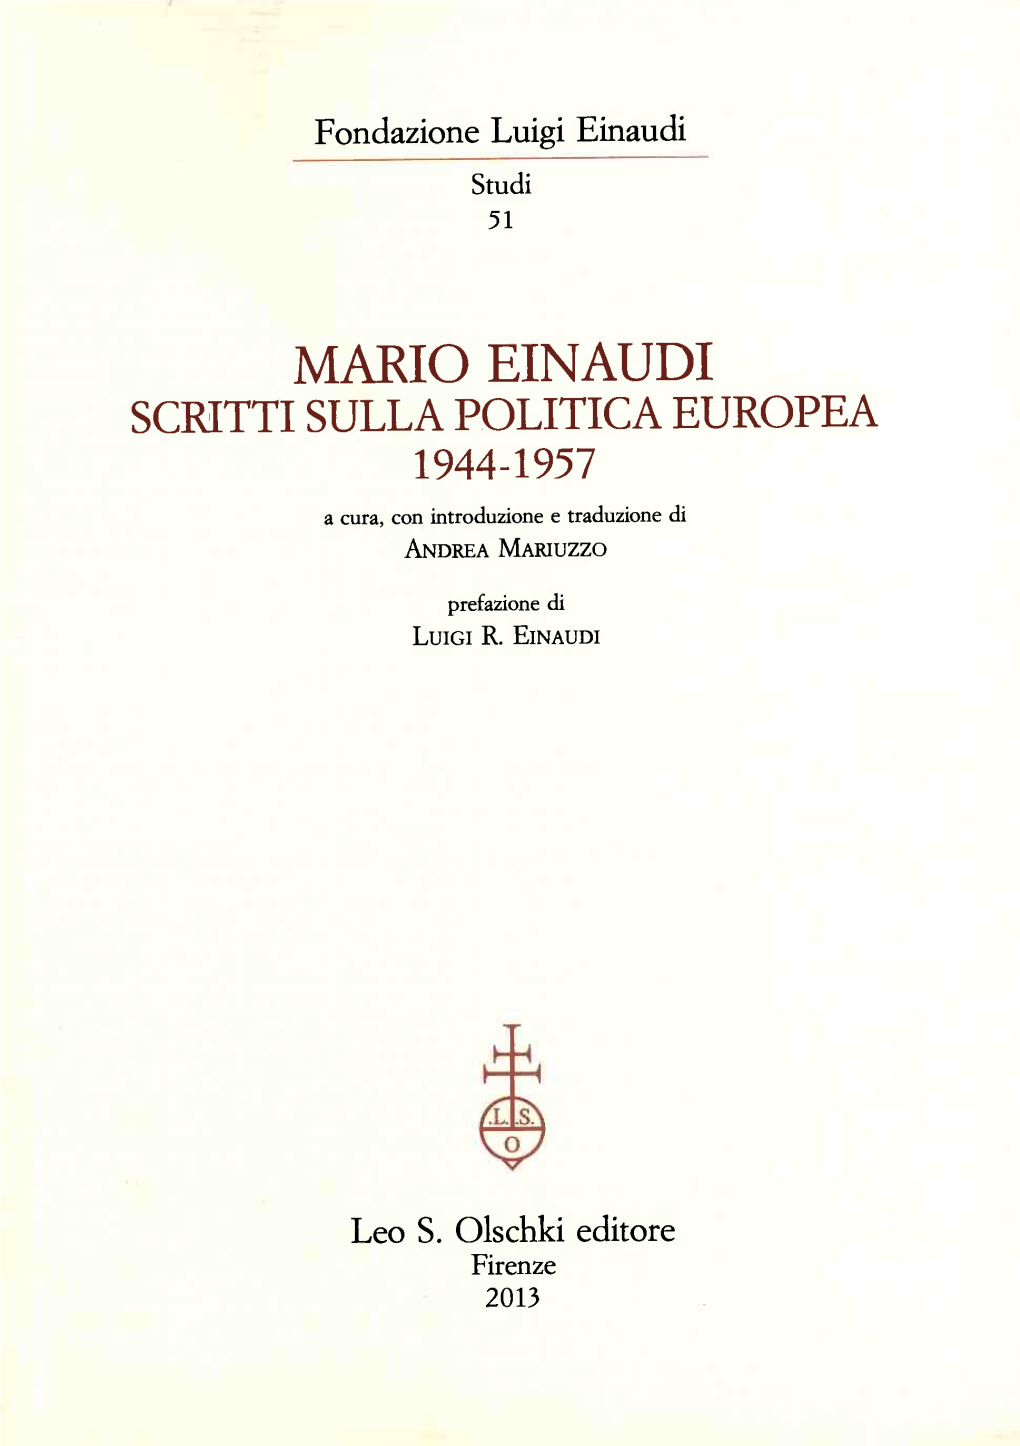 MARIO EINAUDI SCRITTI SULLA POLITICA EUROPEA 1944-1957 a Cura, Con Introduzione E Traduzione Di ANDREA MARIUZZO